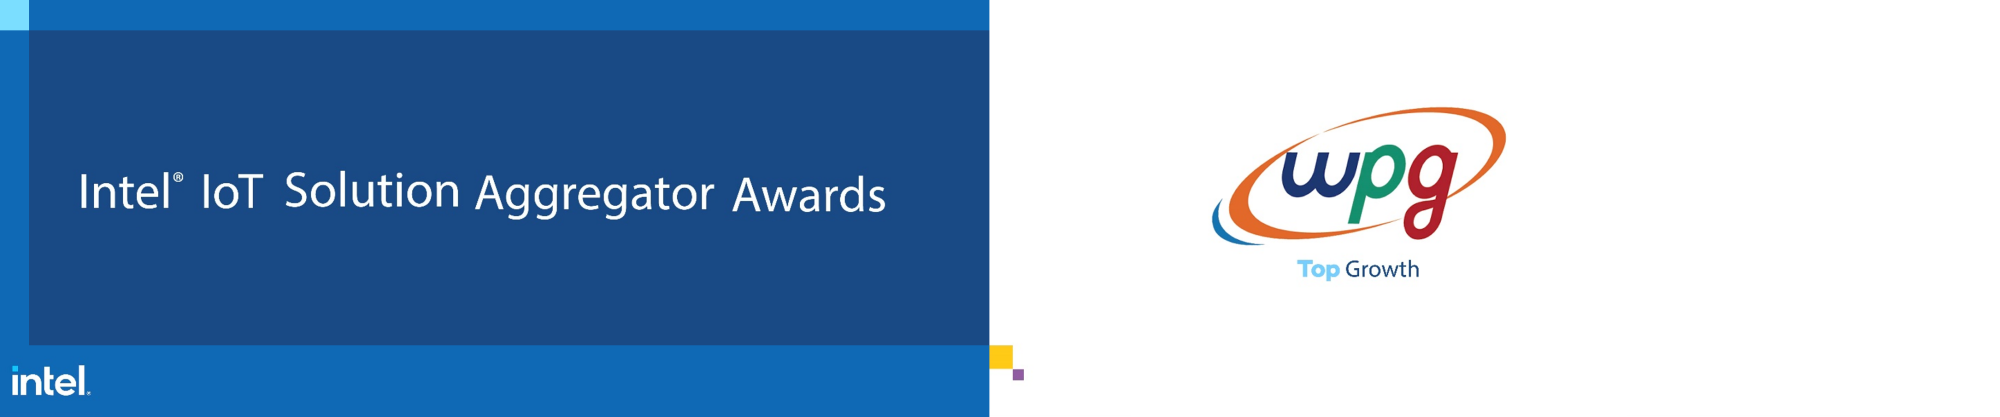 WPG 荣获英特尔物联网解决方案聚合商获得最佳成长奖！